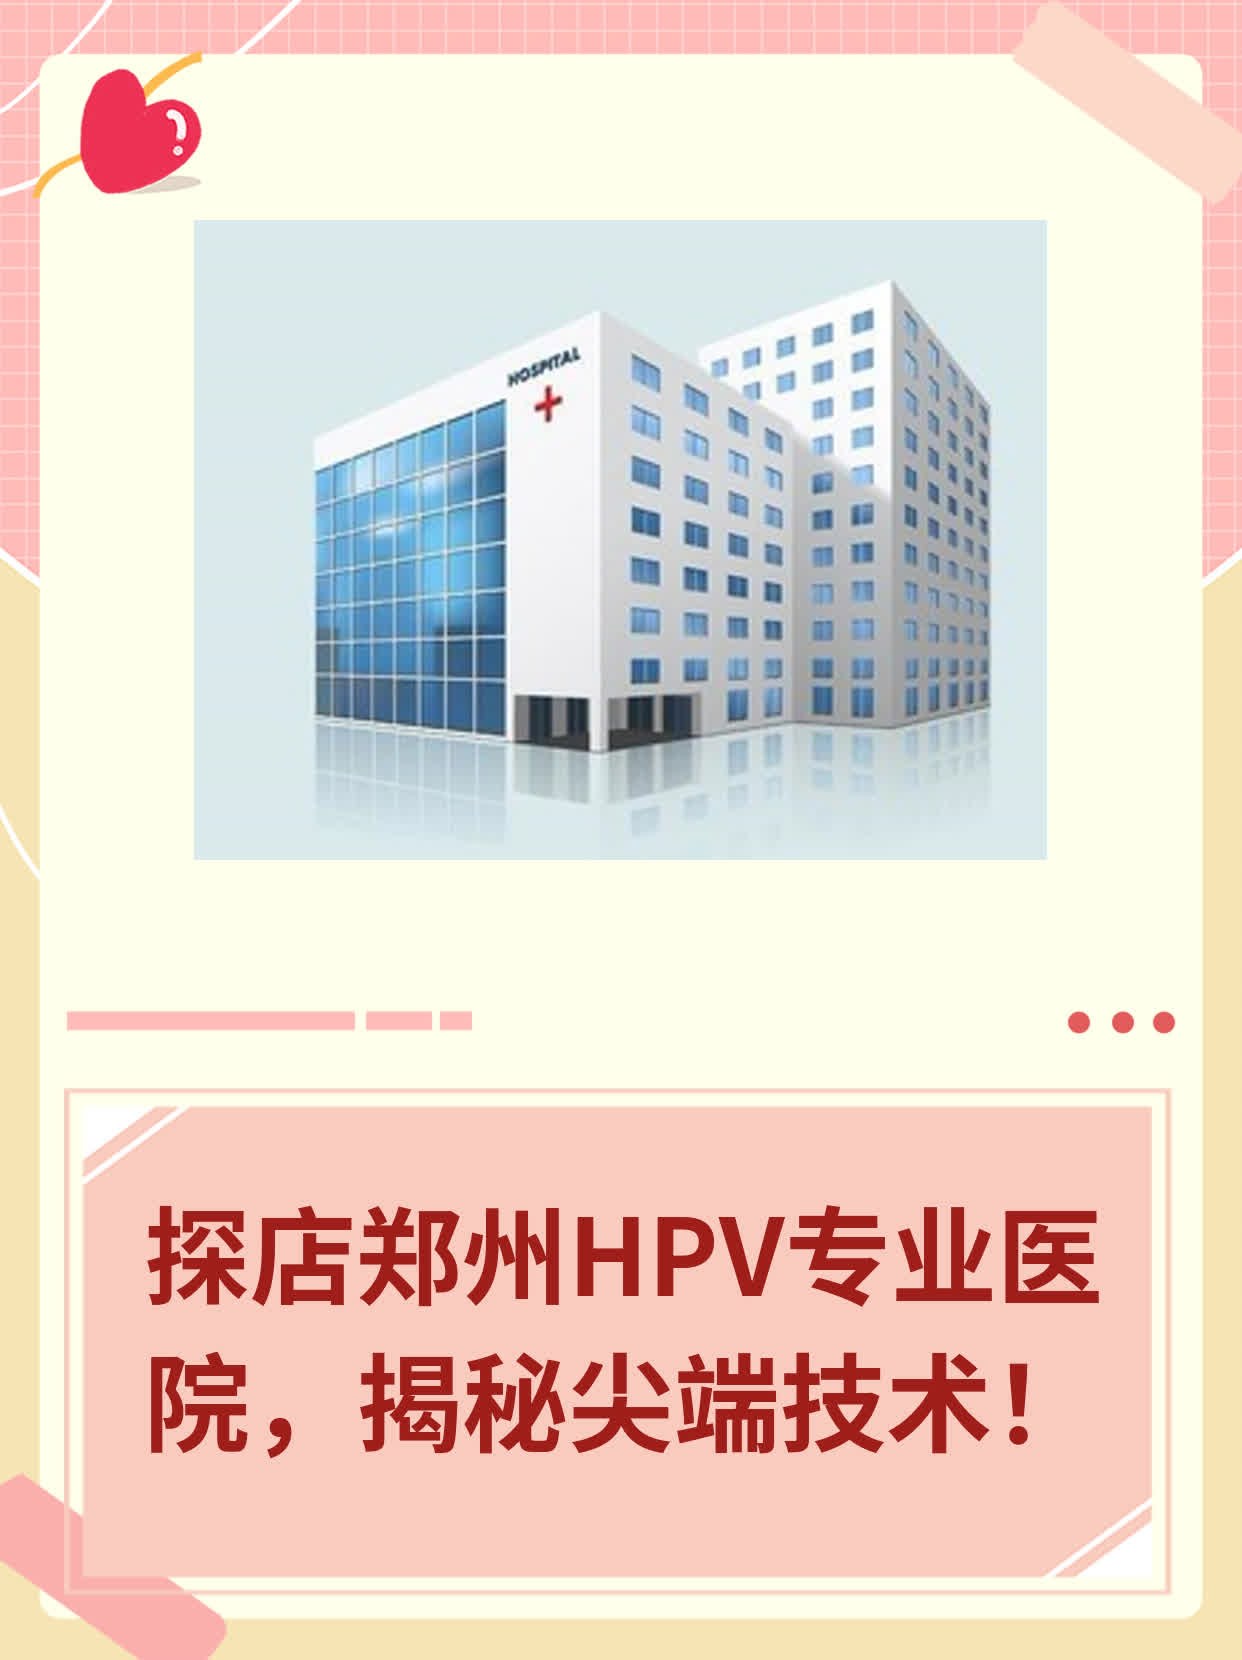 探店郑州HPV专业医院，揭秘尖端技术！